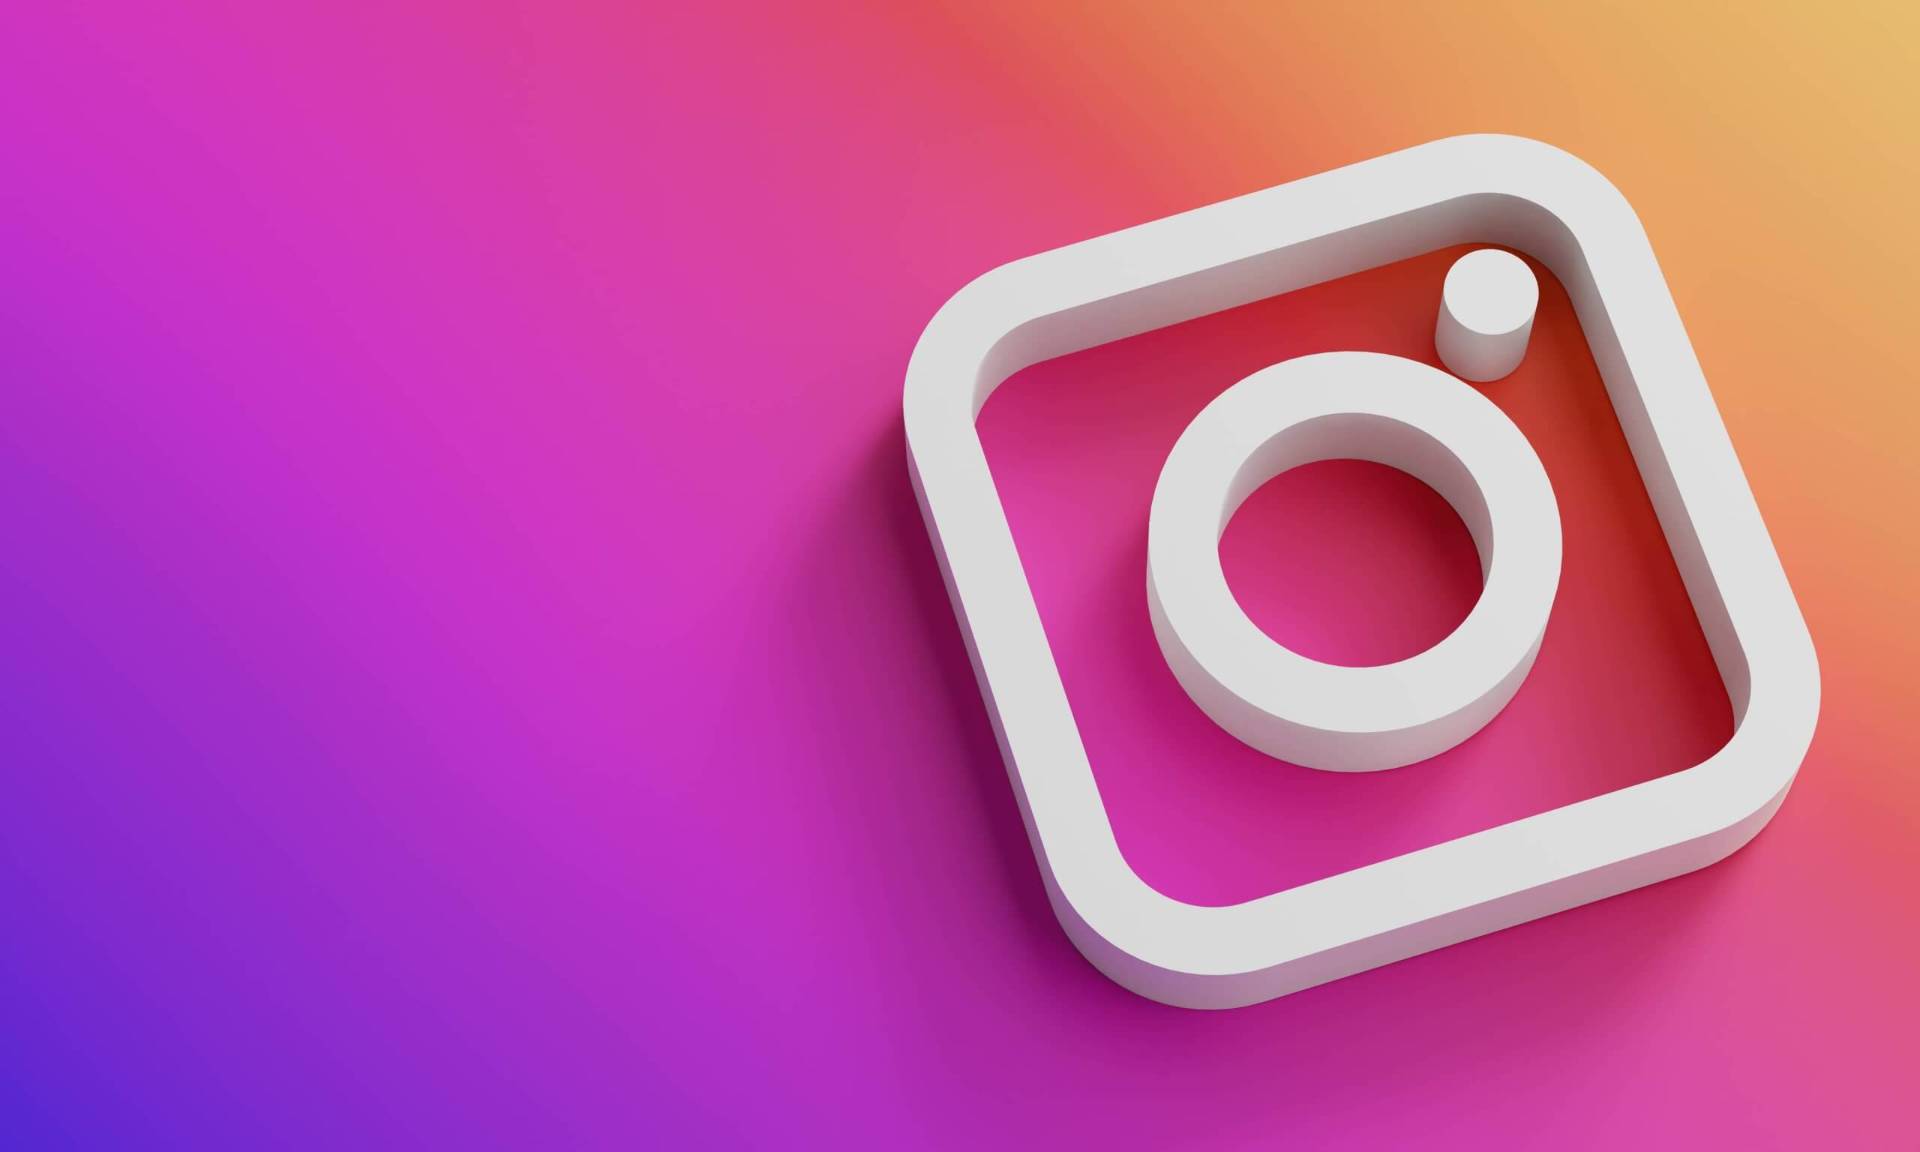 Conheça 5 formas de monetizar o Instagram